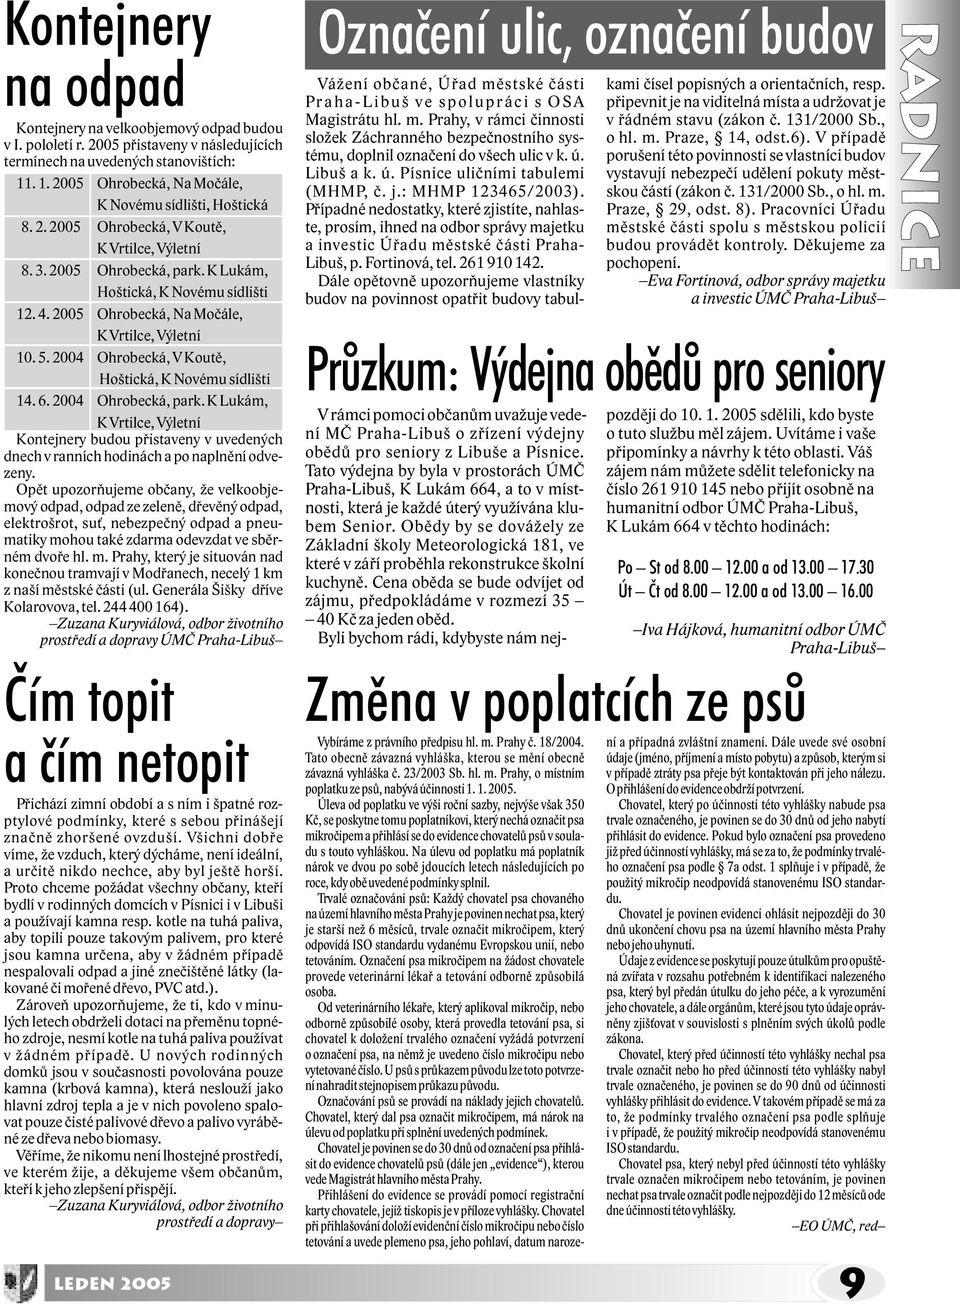 2005 Ohrobecká, Na Moèále, K Vrtilce, Výletní 10. 5. 2004 Ohrobecká, V Koutì, Hoštická, K Novému sídlišti 14. 6. 2004 Ohrobecká, park.